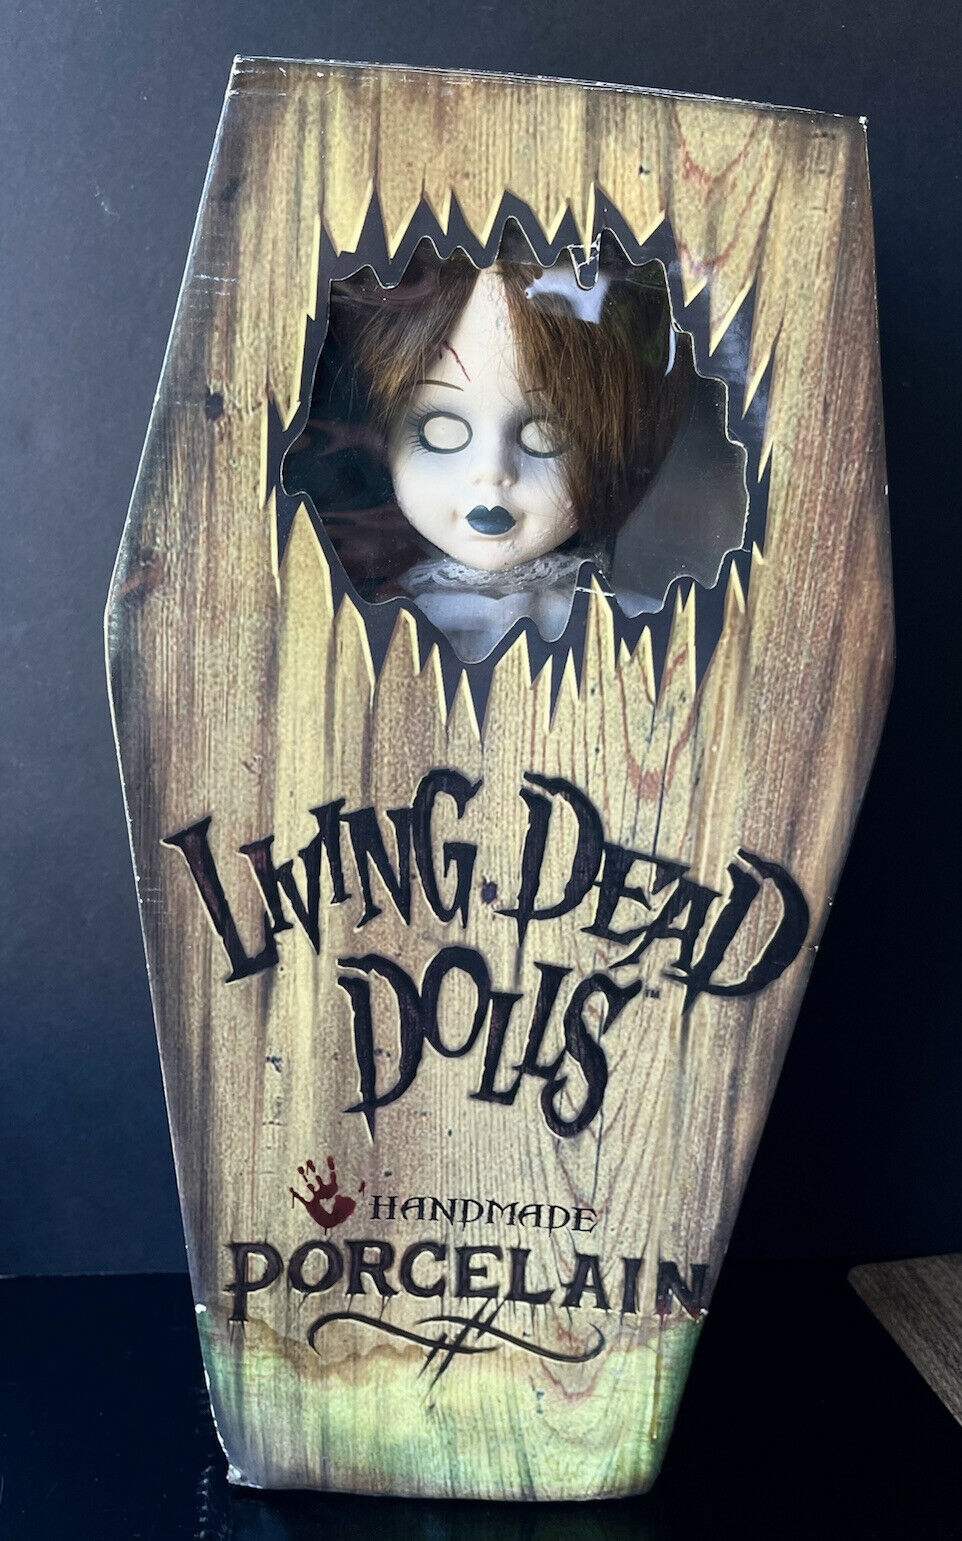 Living Dead Dolls "posey" Handmade Porcelain 18 In